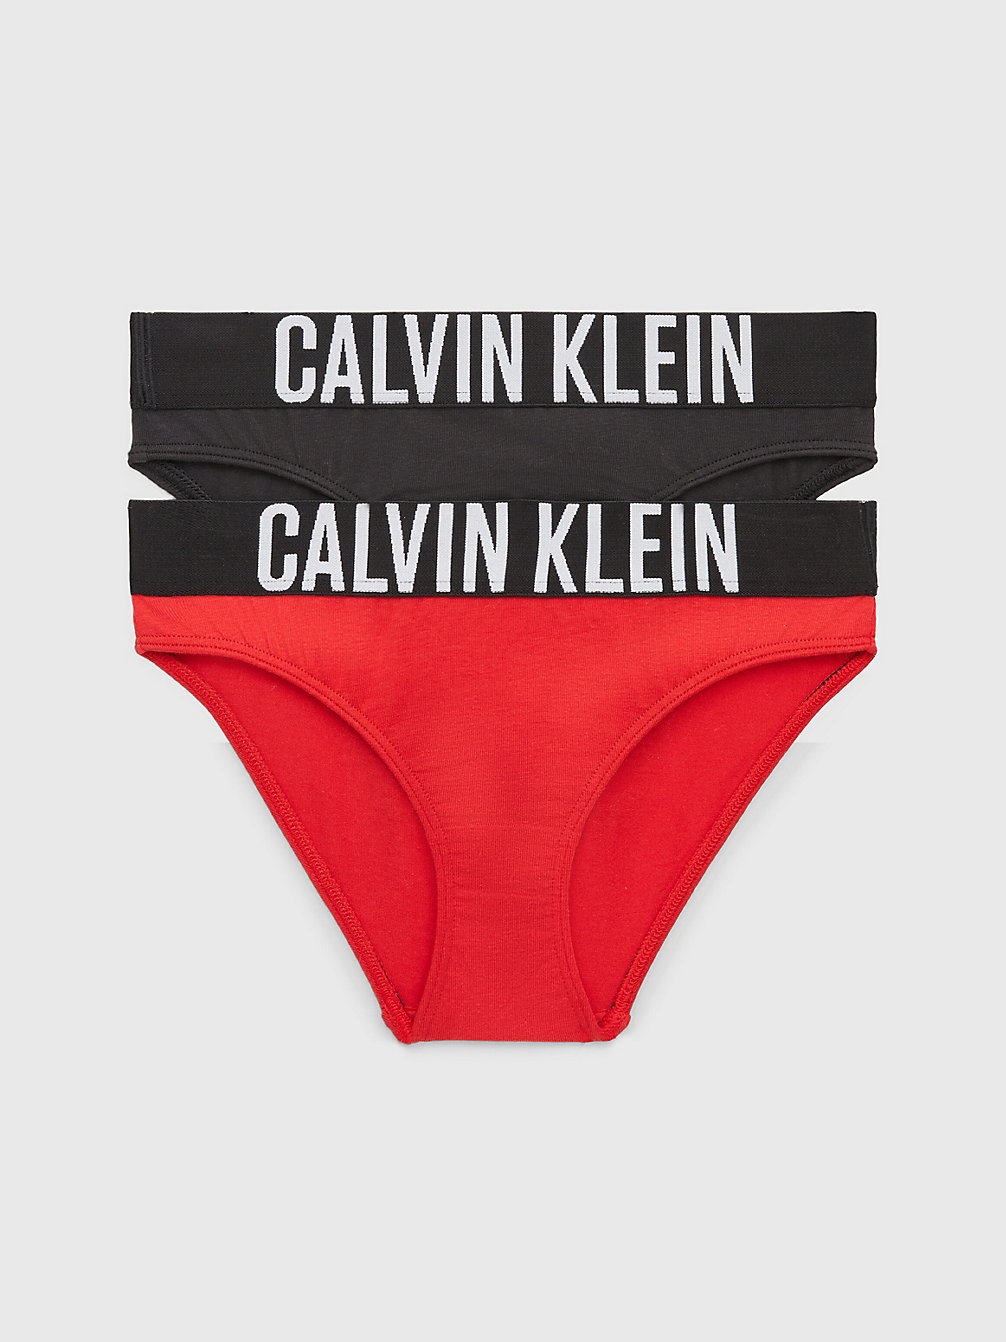 REDHOT/PVHBLACK 2 Pack Girls Bikini Briefs - Intense Power undefined girls Calvin Klein